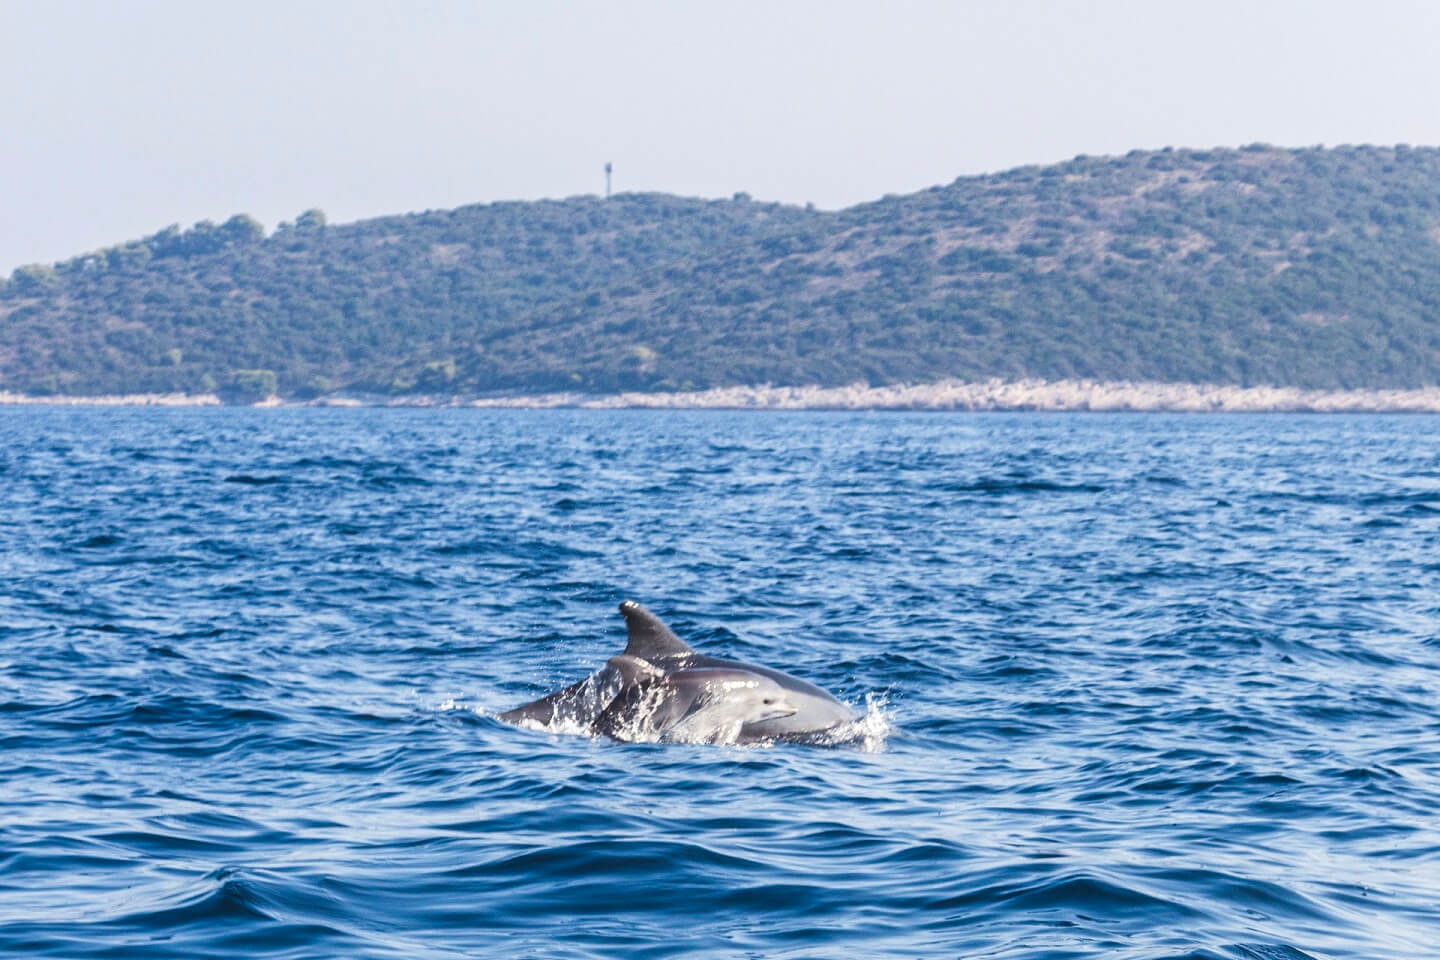 Dolphin in the adriatic sea